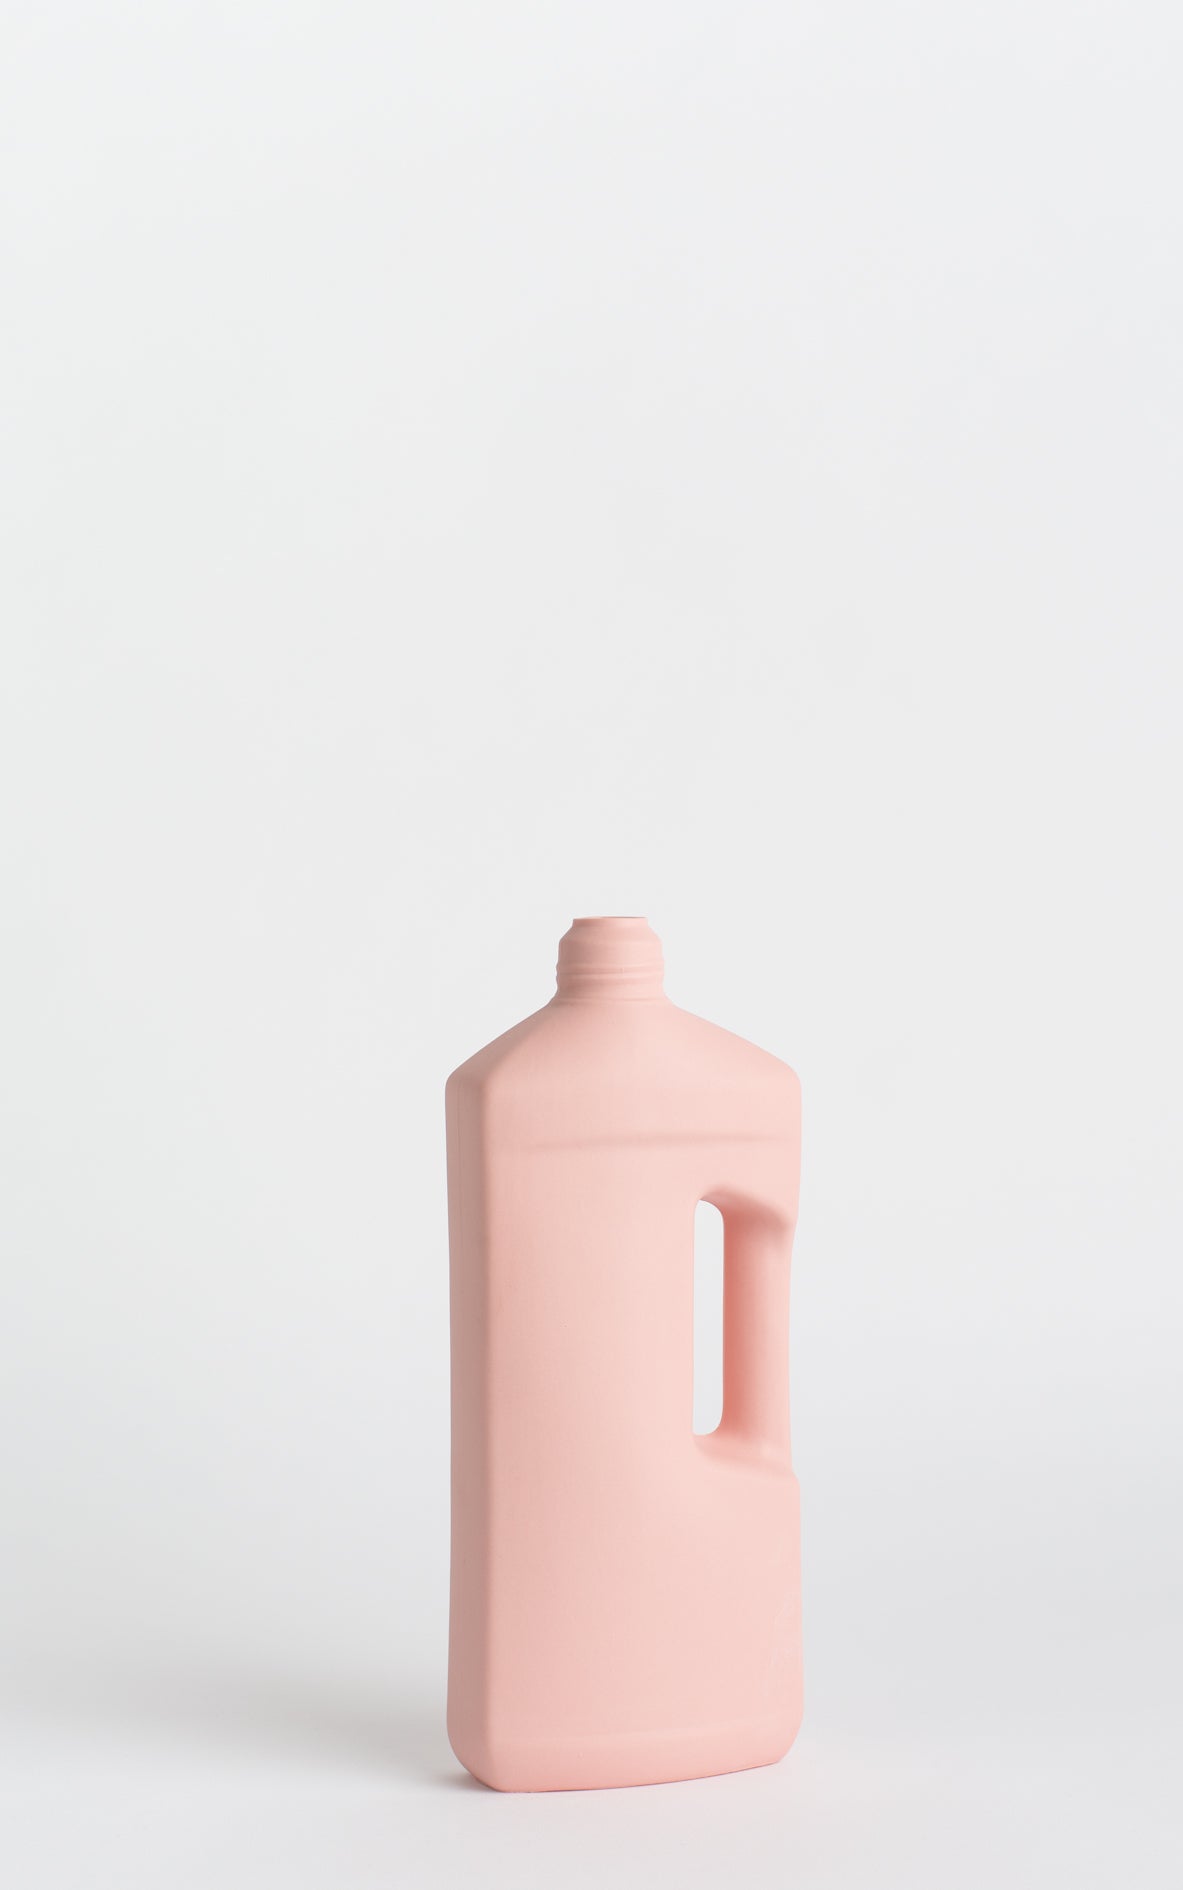 Foekje Fleur - Bottle vase #3 pink